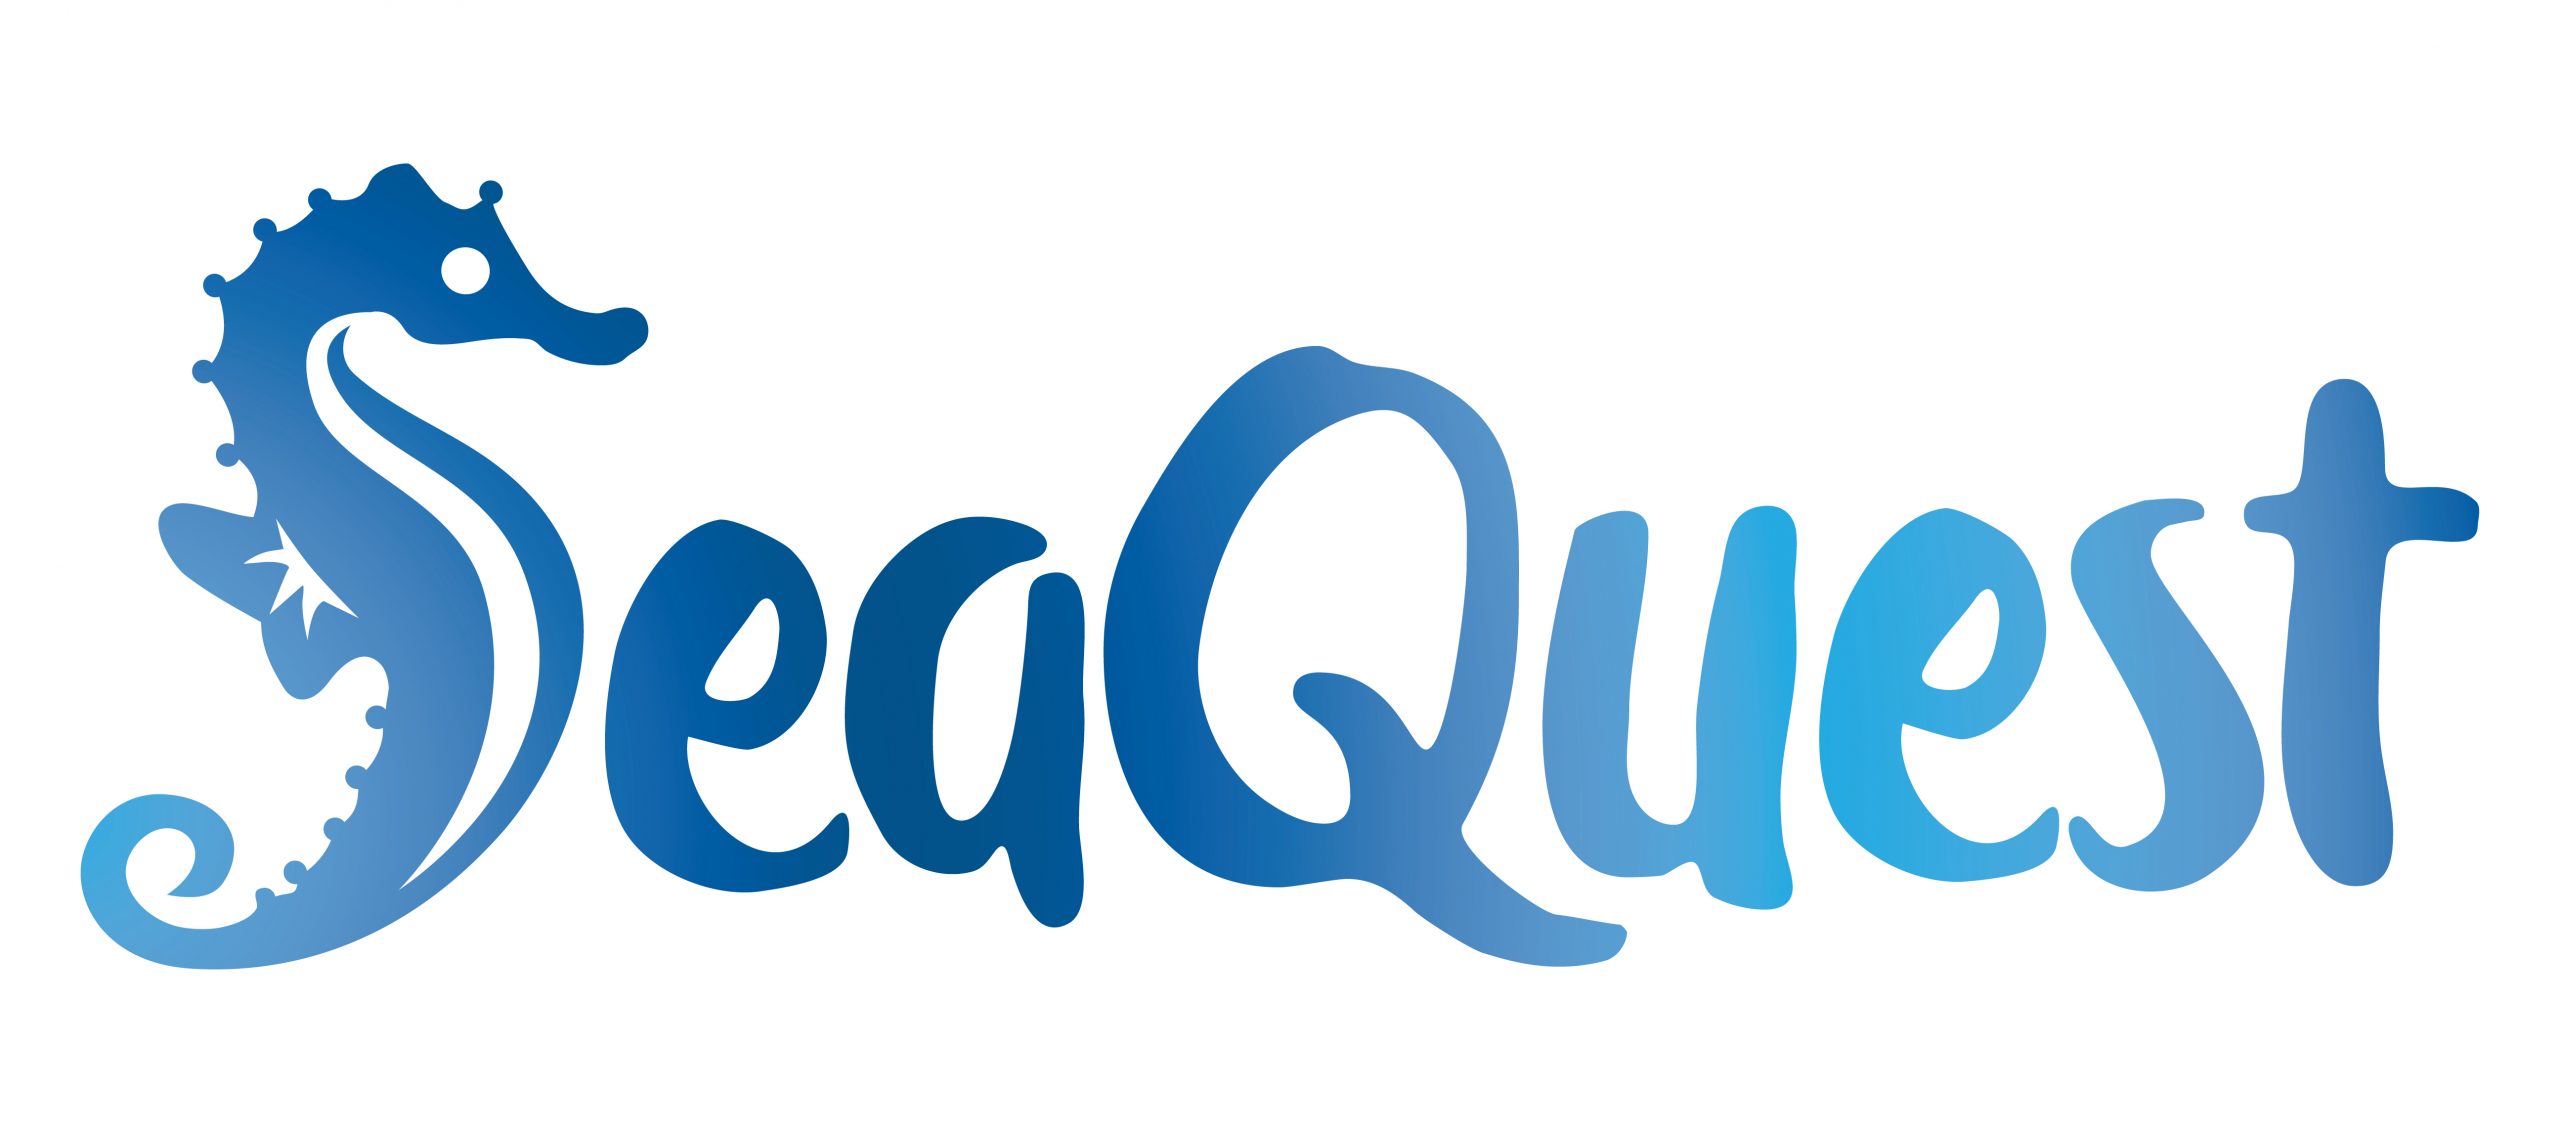 SeaQuest